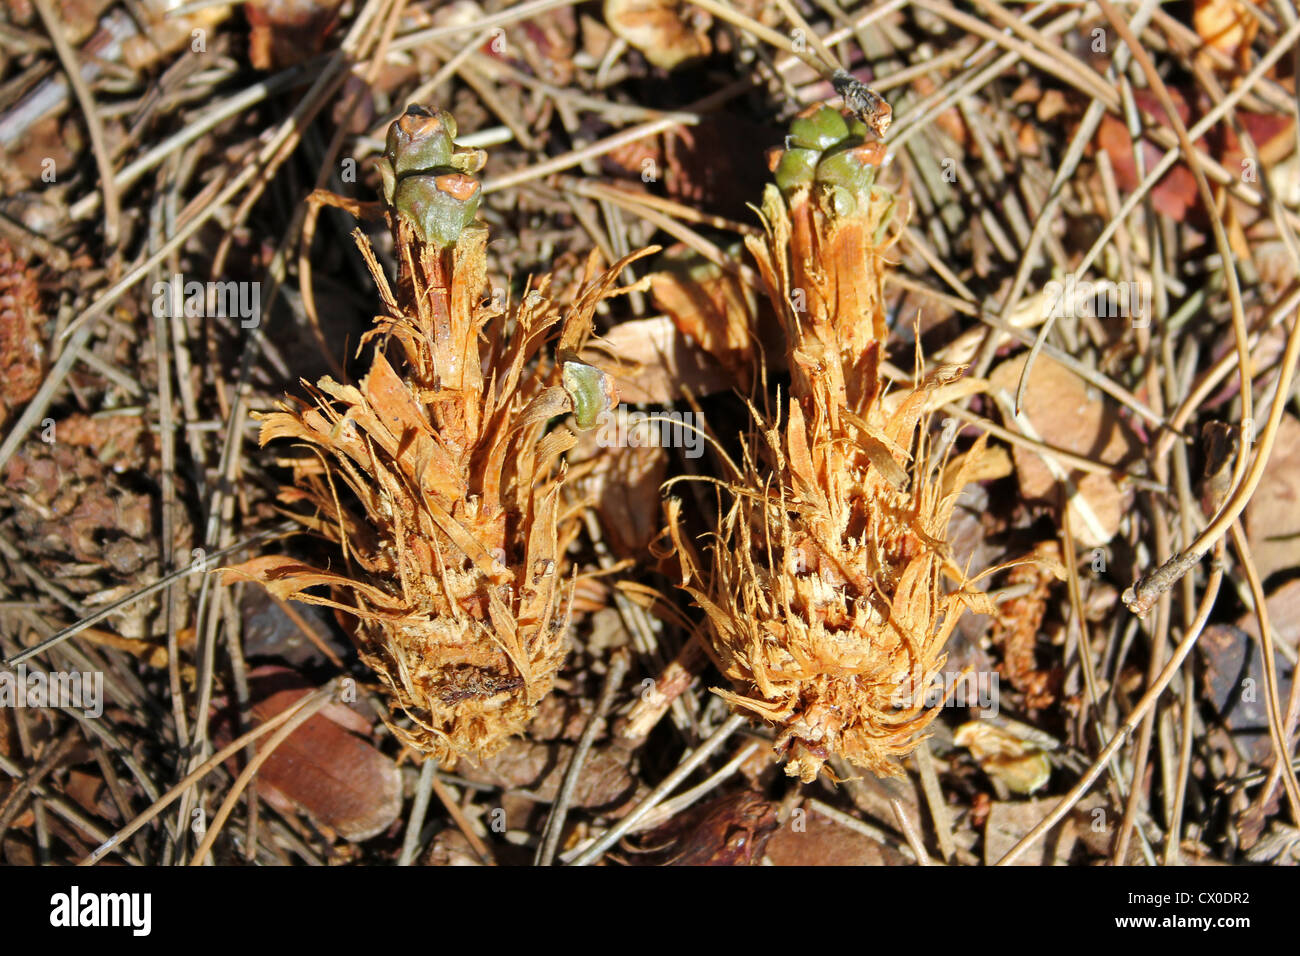 Los conos de pino comidos por ardilla roja Sciurus vulgaris Foto de stock